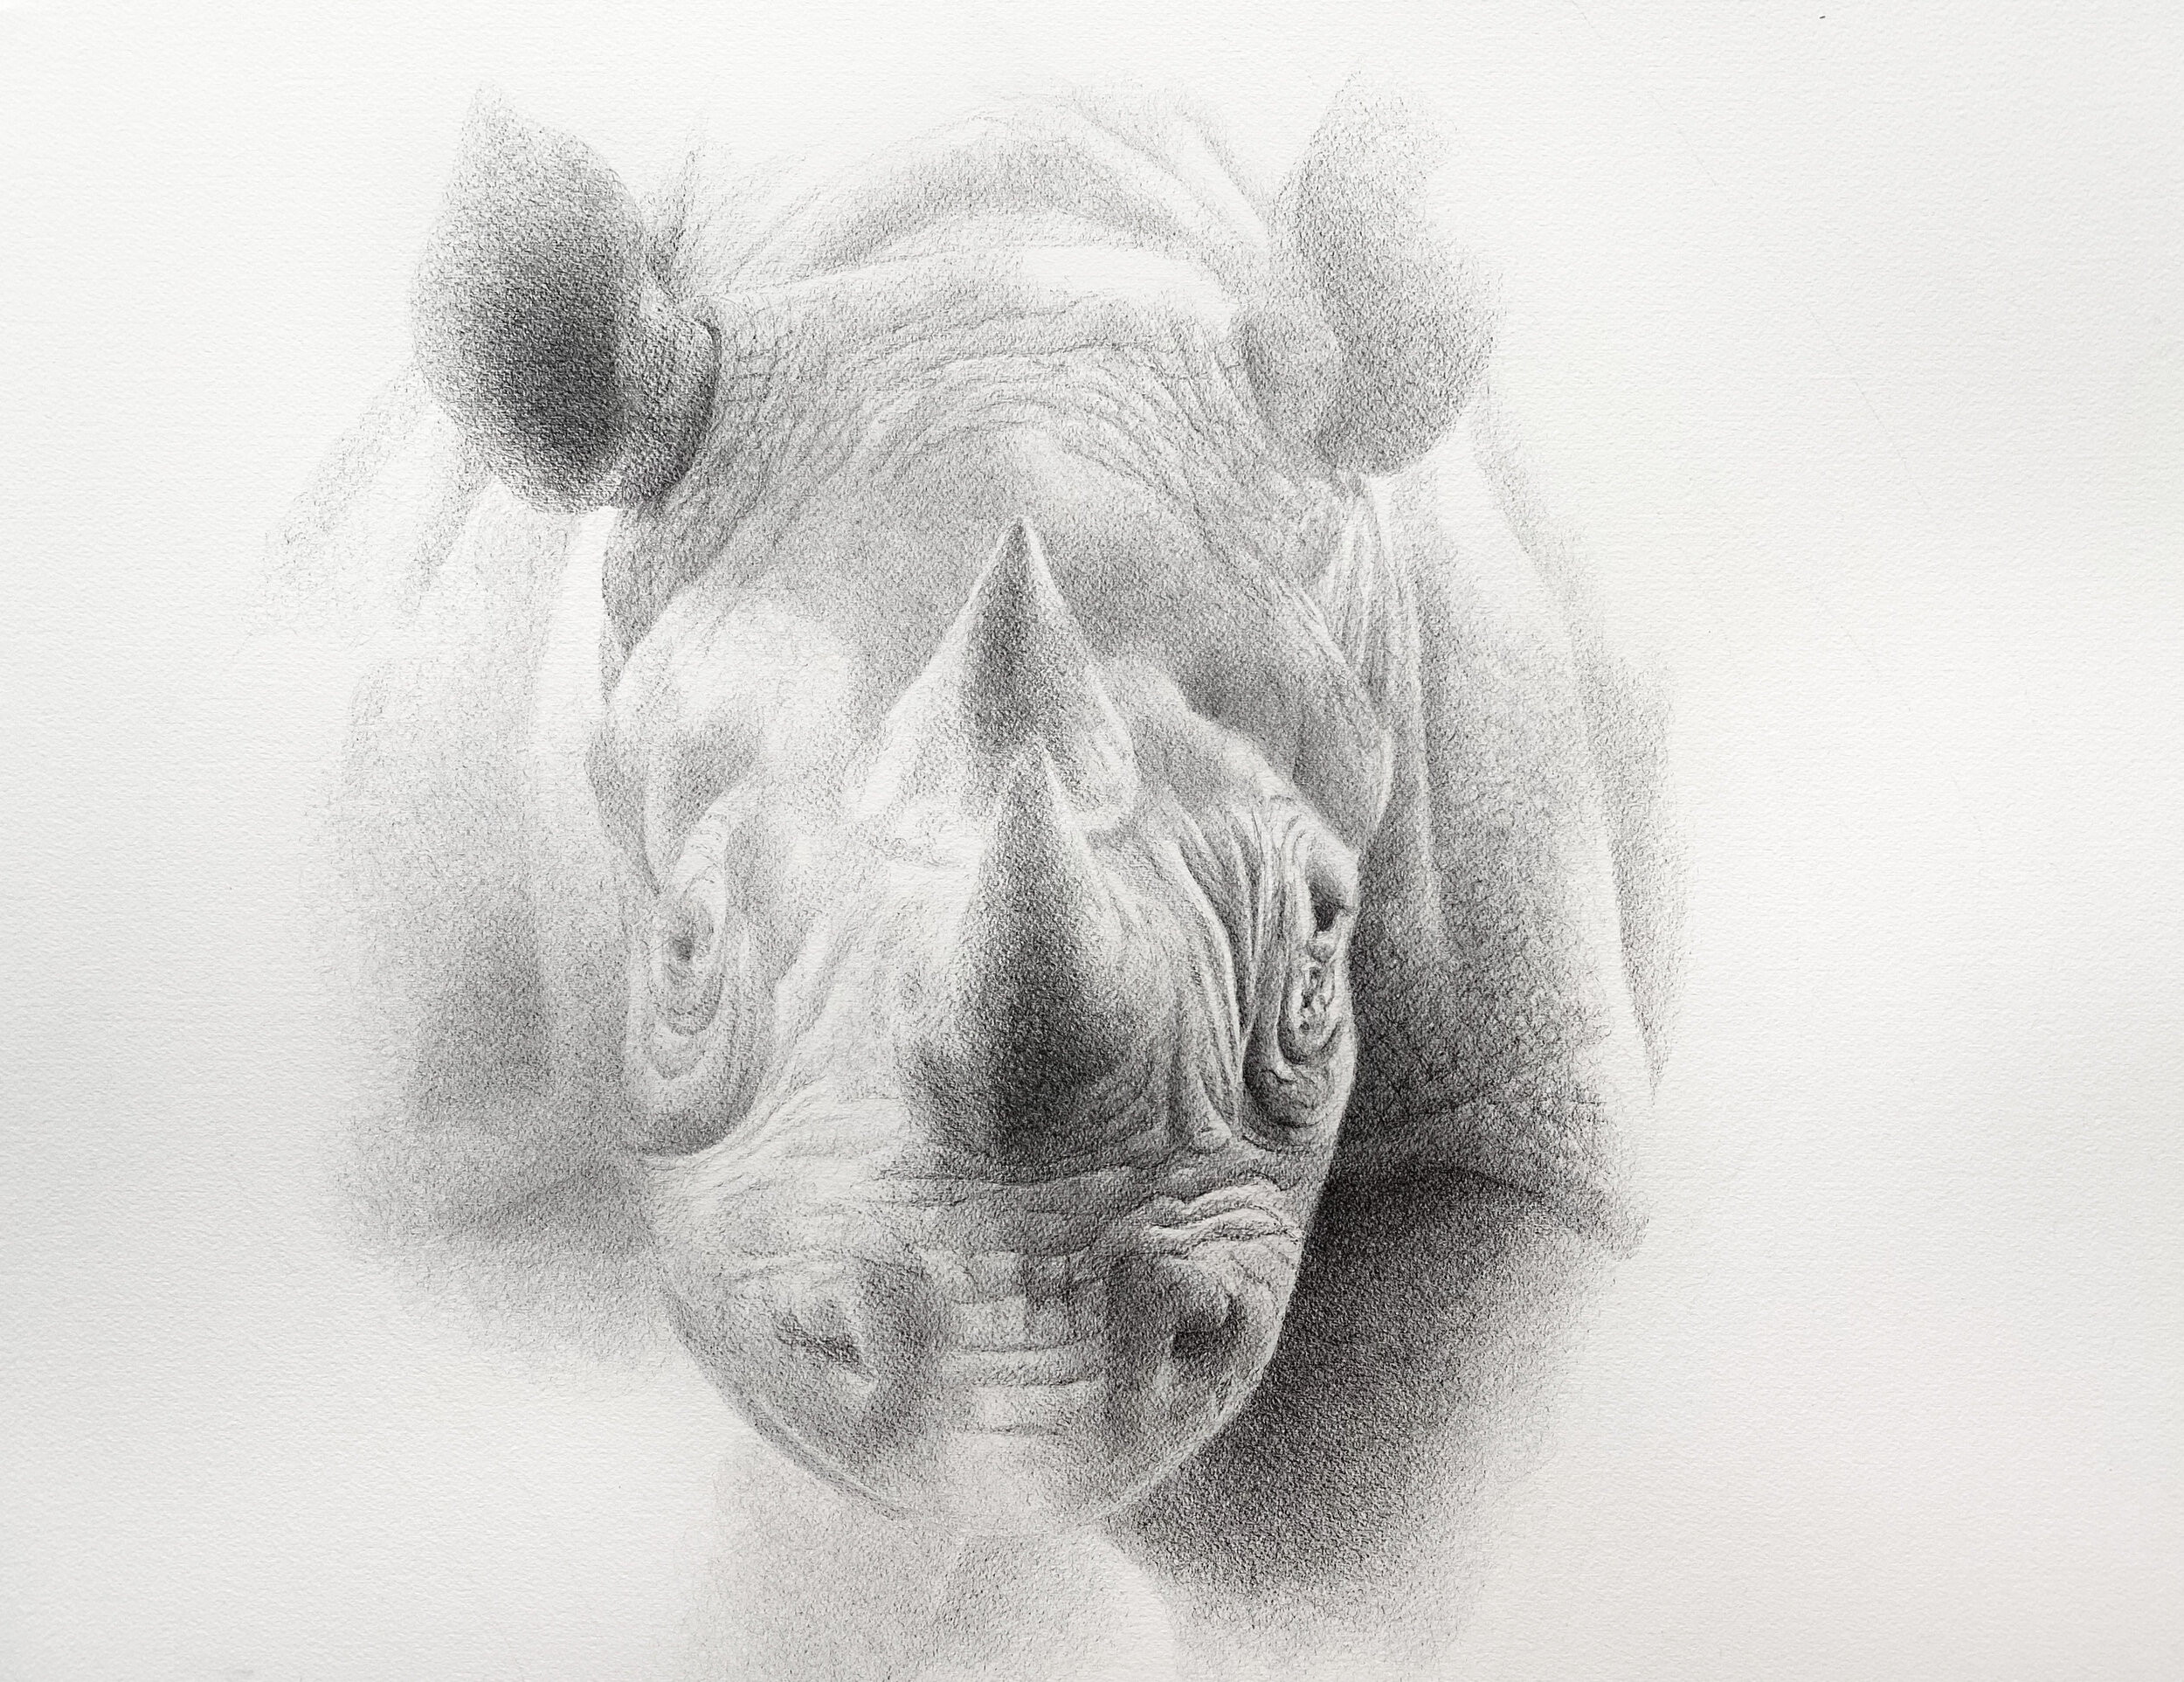   Cloud Rhino   pen on paper  20x24 